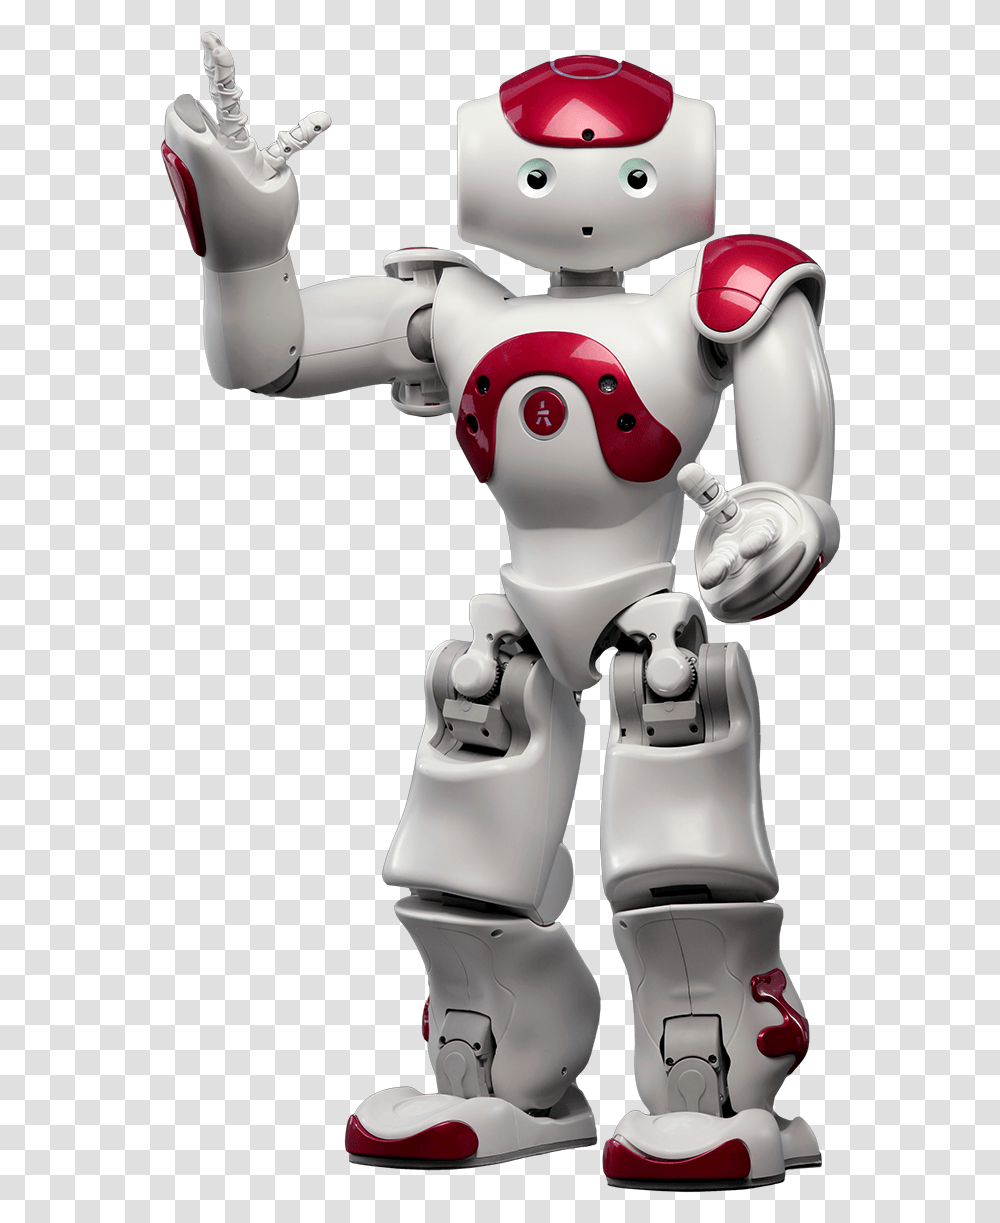 Nao Robot 4 Image Real Life Robot, Toy Transparent Png